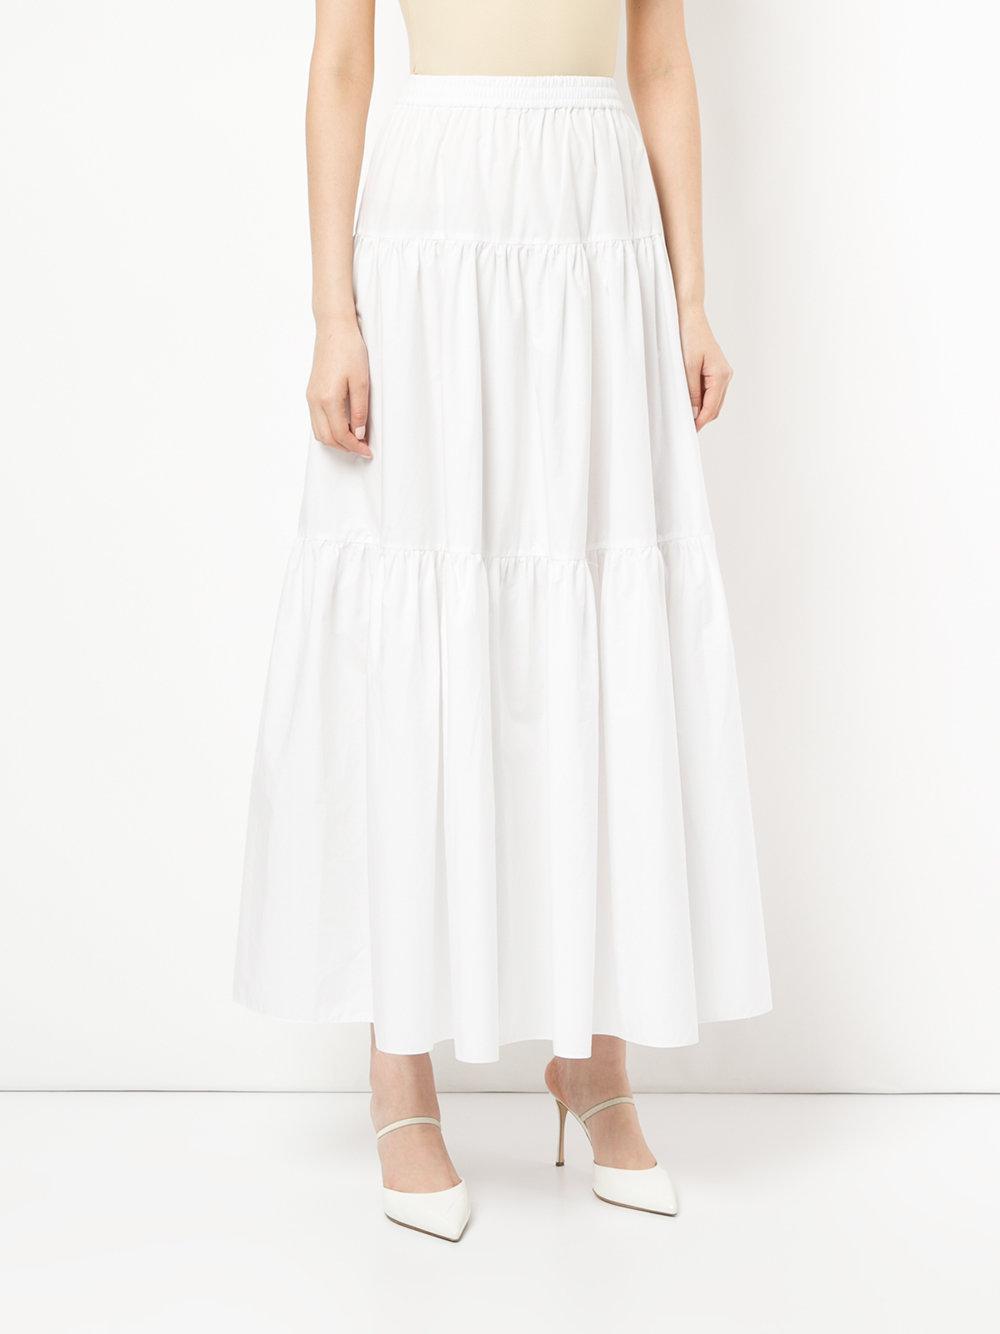 Calvin Klein Tiered Maxi Skirt in White - Lyst